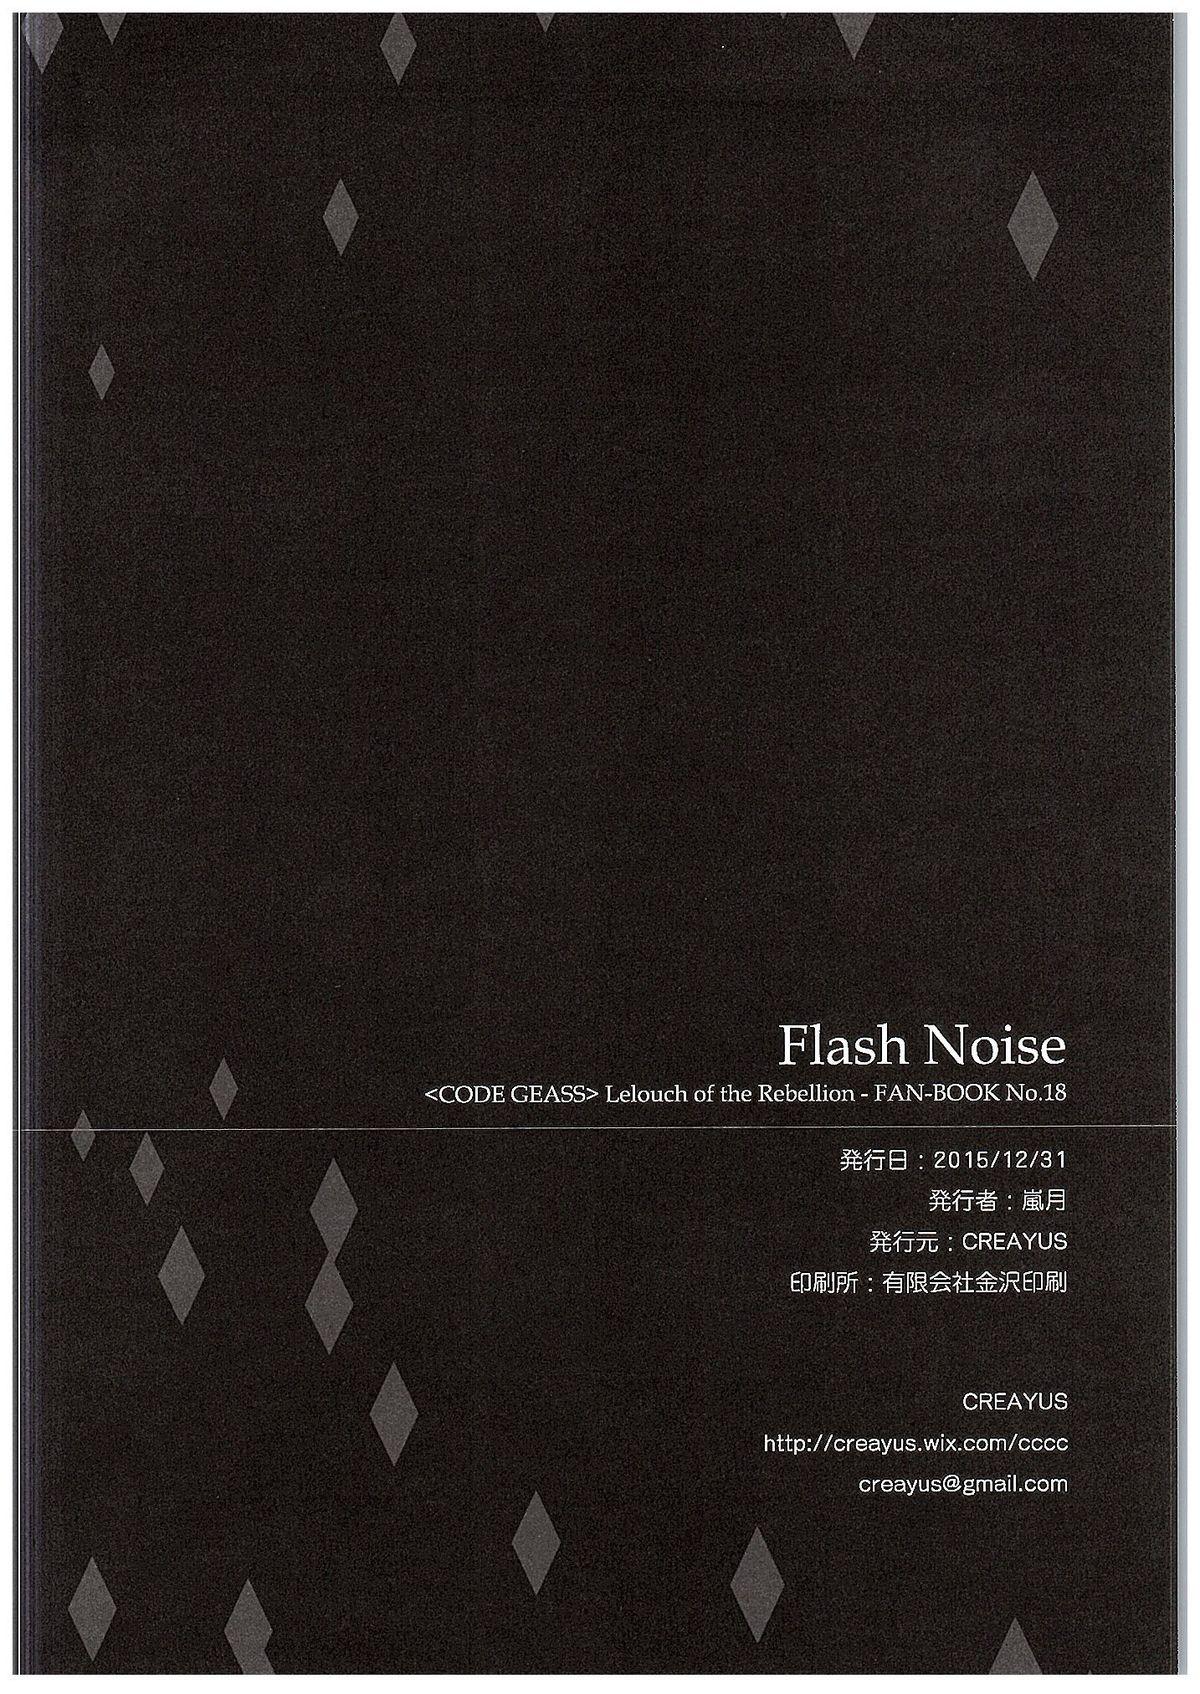 FLASH NOISE 24